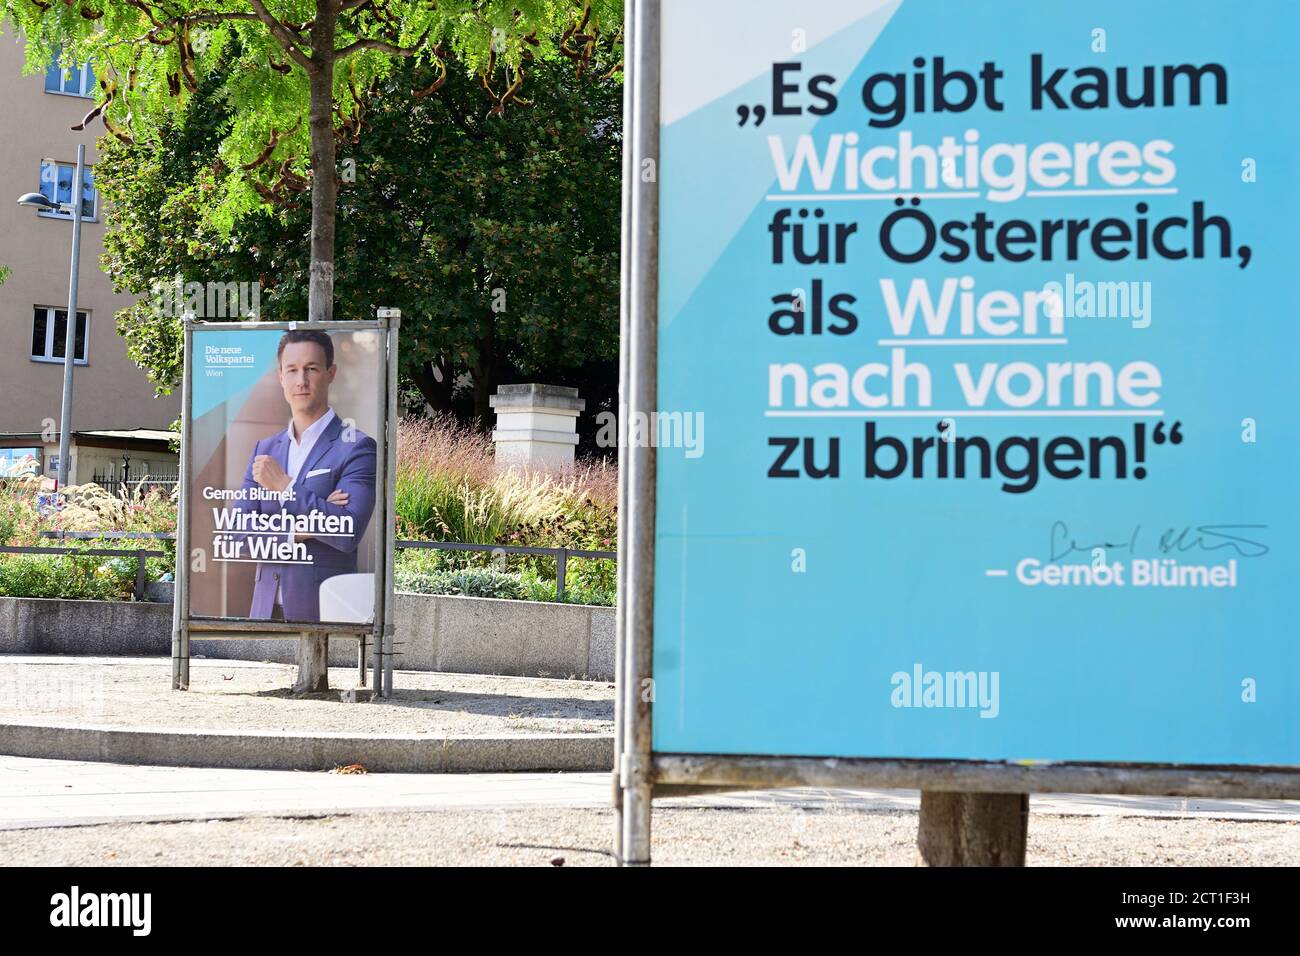 Vienne, Autriche. Affiches électorales de l'ÖVP (Nouveau Parti populaire de Vienne) pour les élections municipales du 11 octobre 2020 à Vienne Banque D'Images